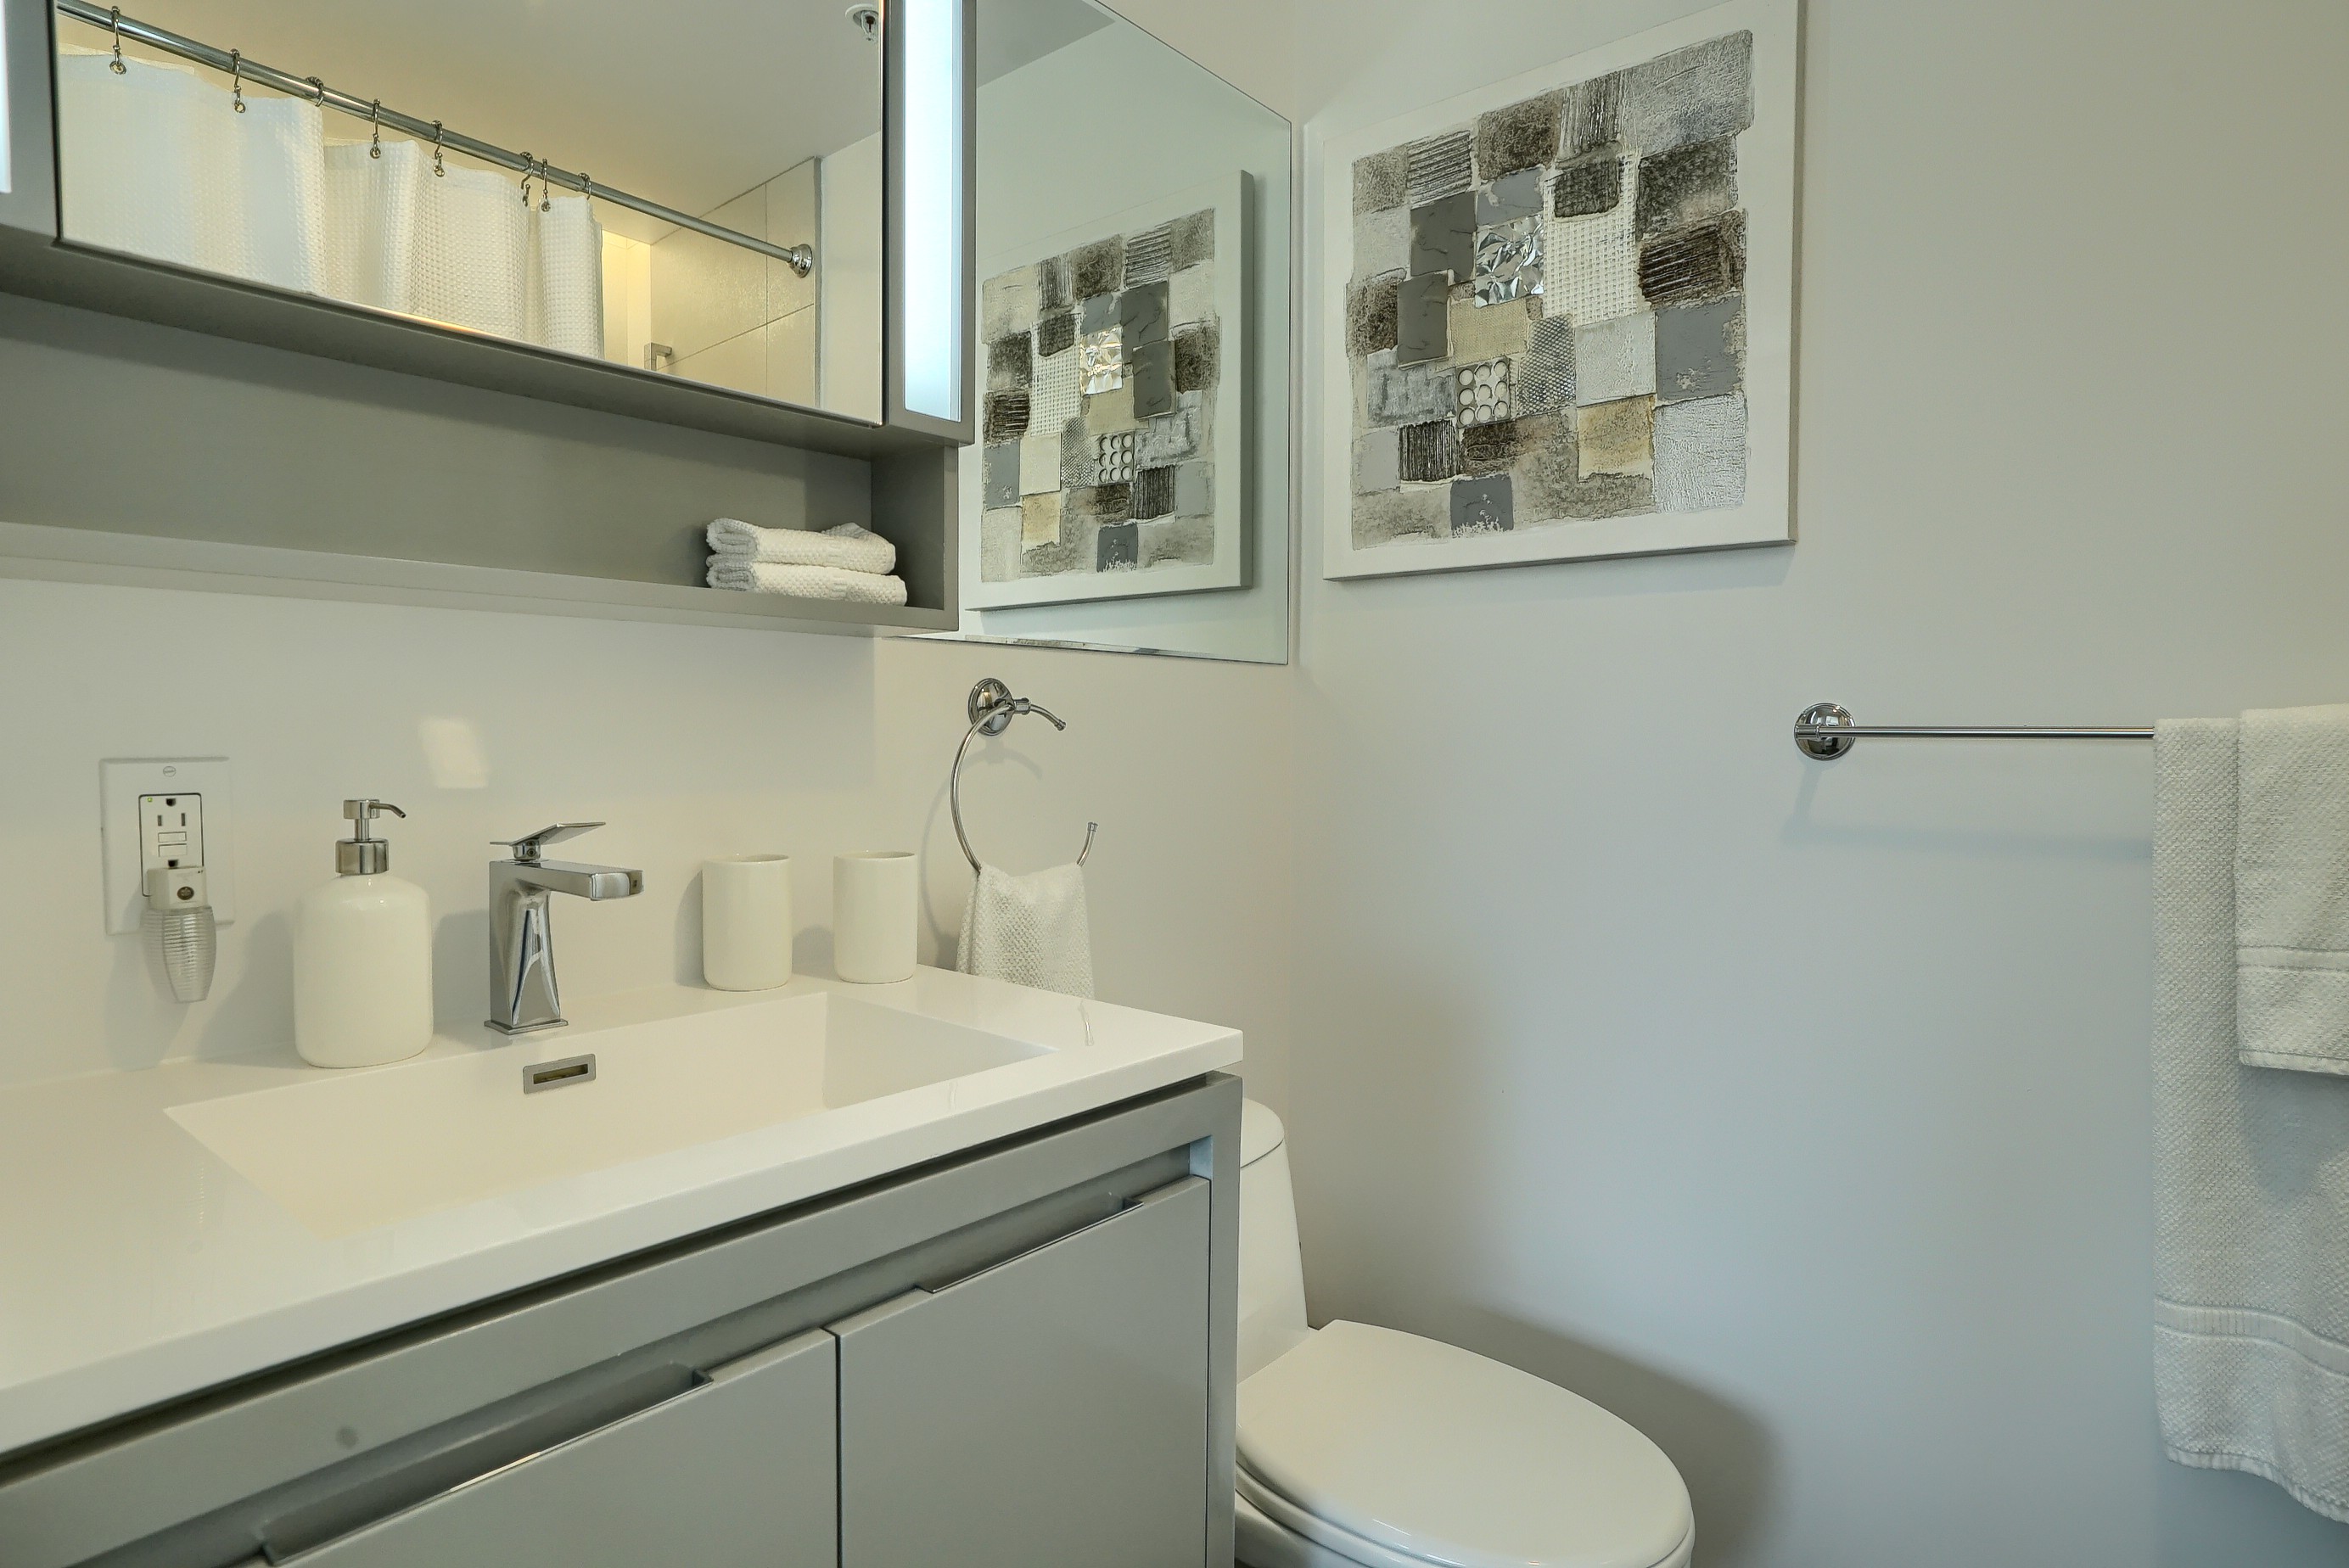 Vue en angle de la deuxième salle de bain de cet location corporative meublée à Montréal. Évier blanc surdimensionné avec robinet design et grand miroir bien éclairé